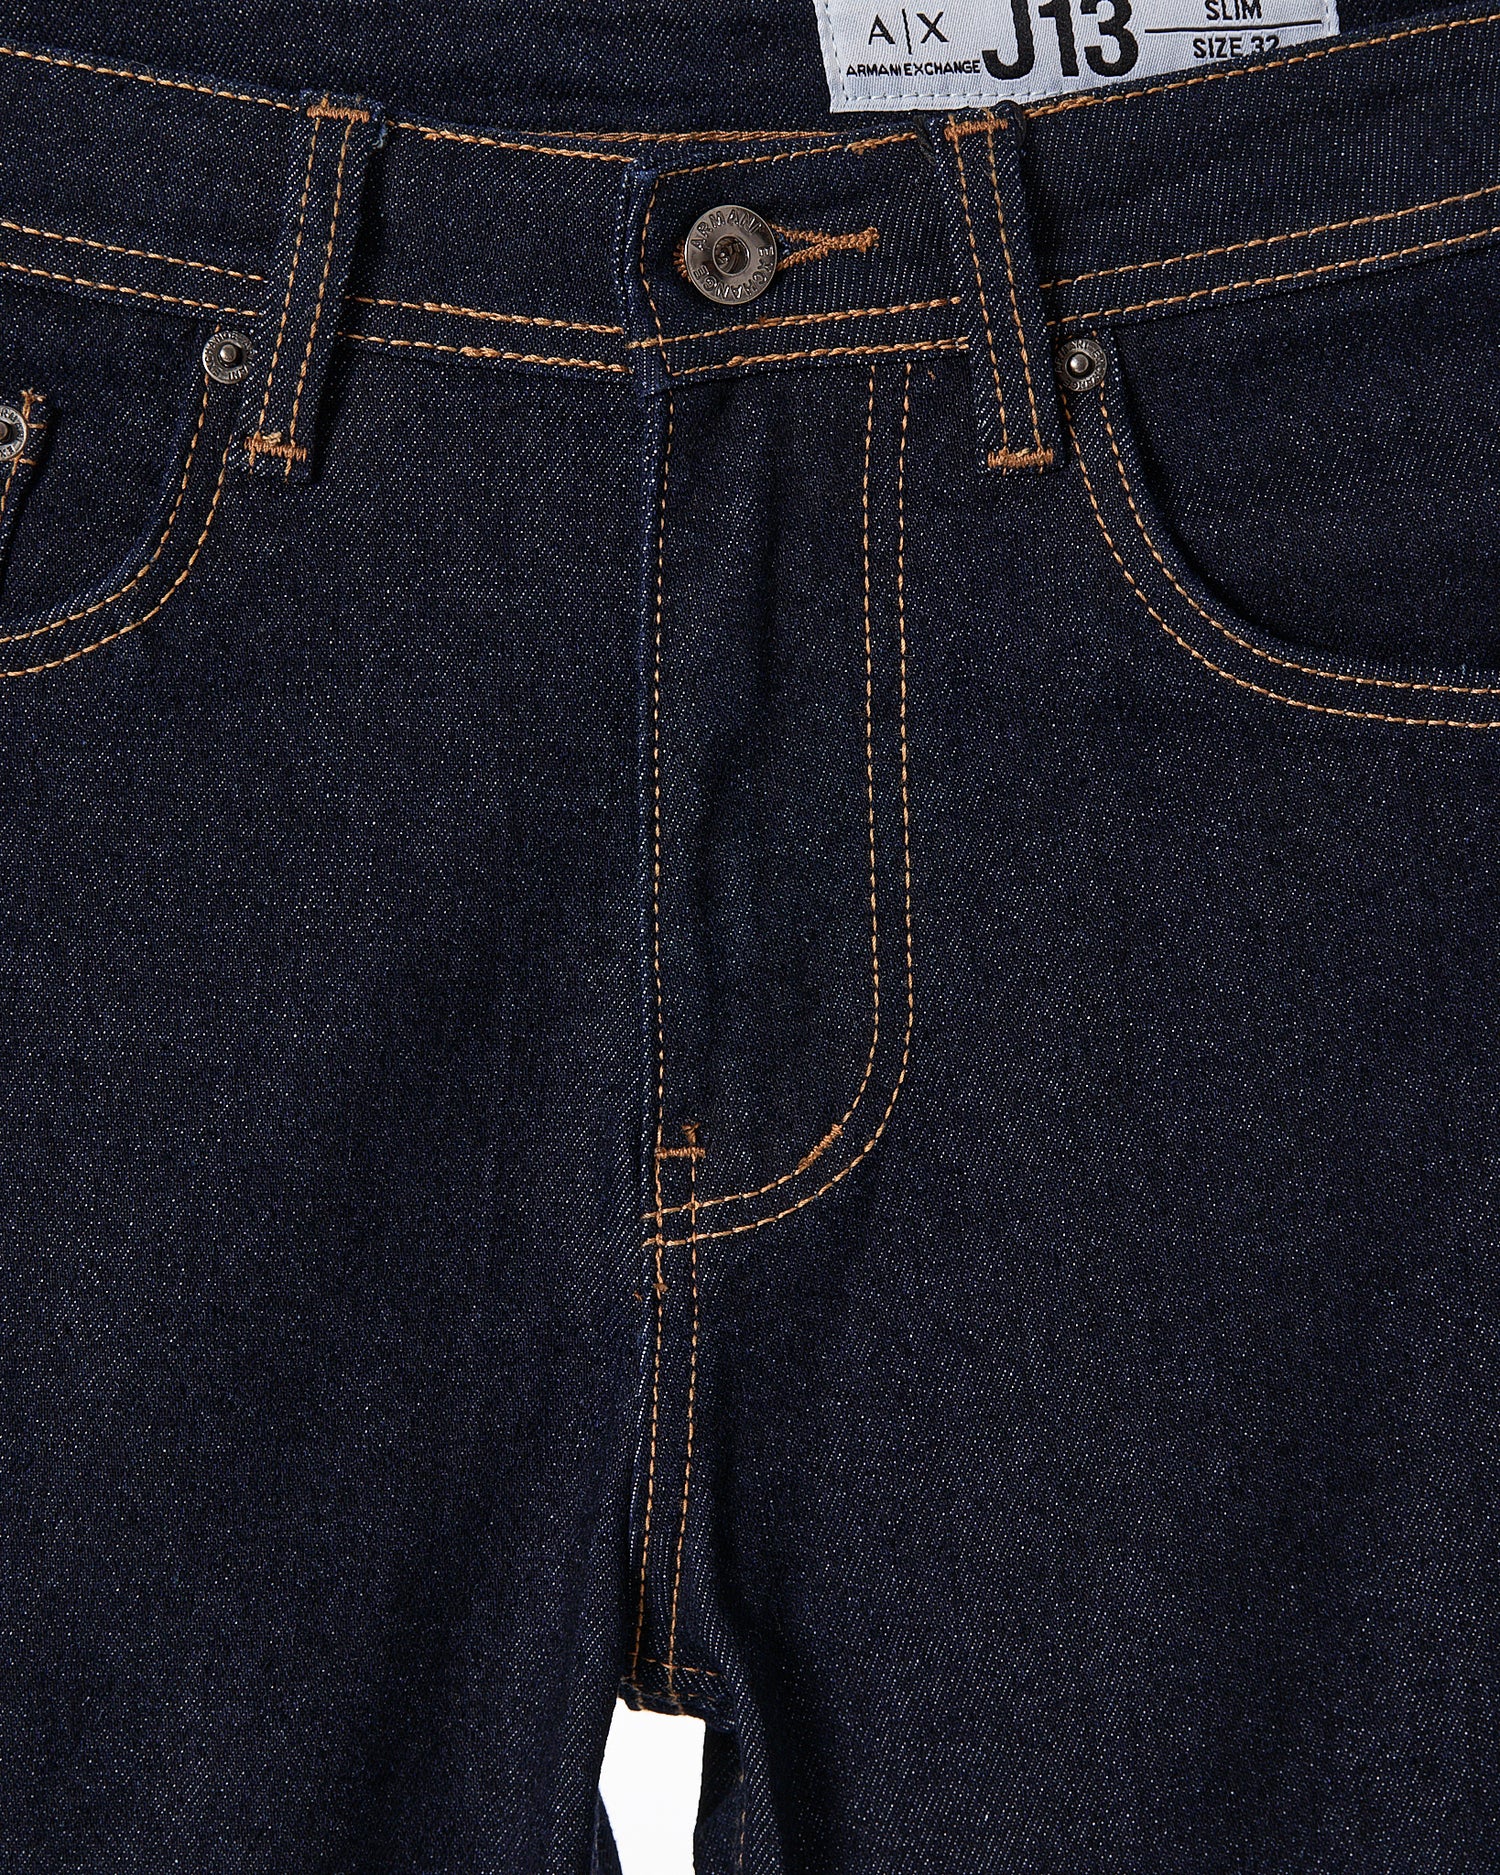 ARM Men Dark Blue Slim Fit  Jeans 24.90